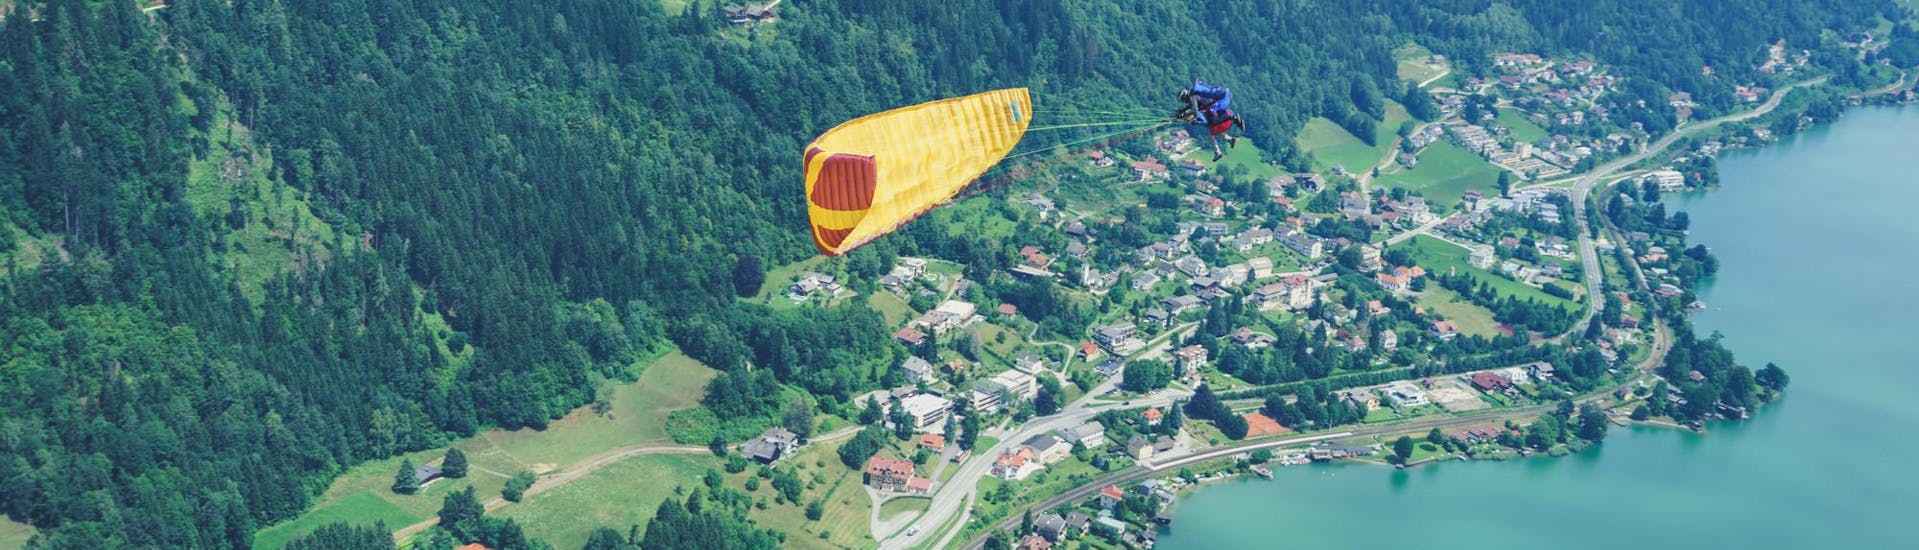 Volo acrobatico in parapendio biposto a Villaco (da 6 anni) - Wörthersee.